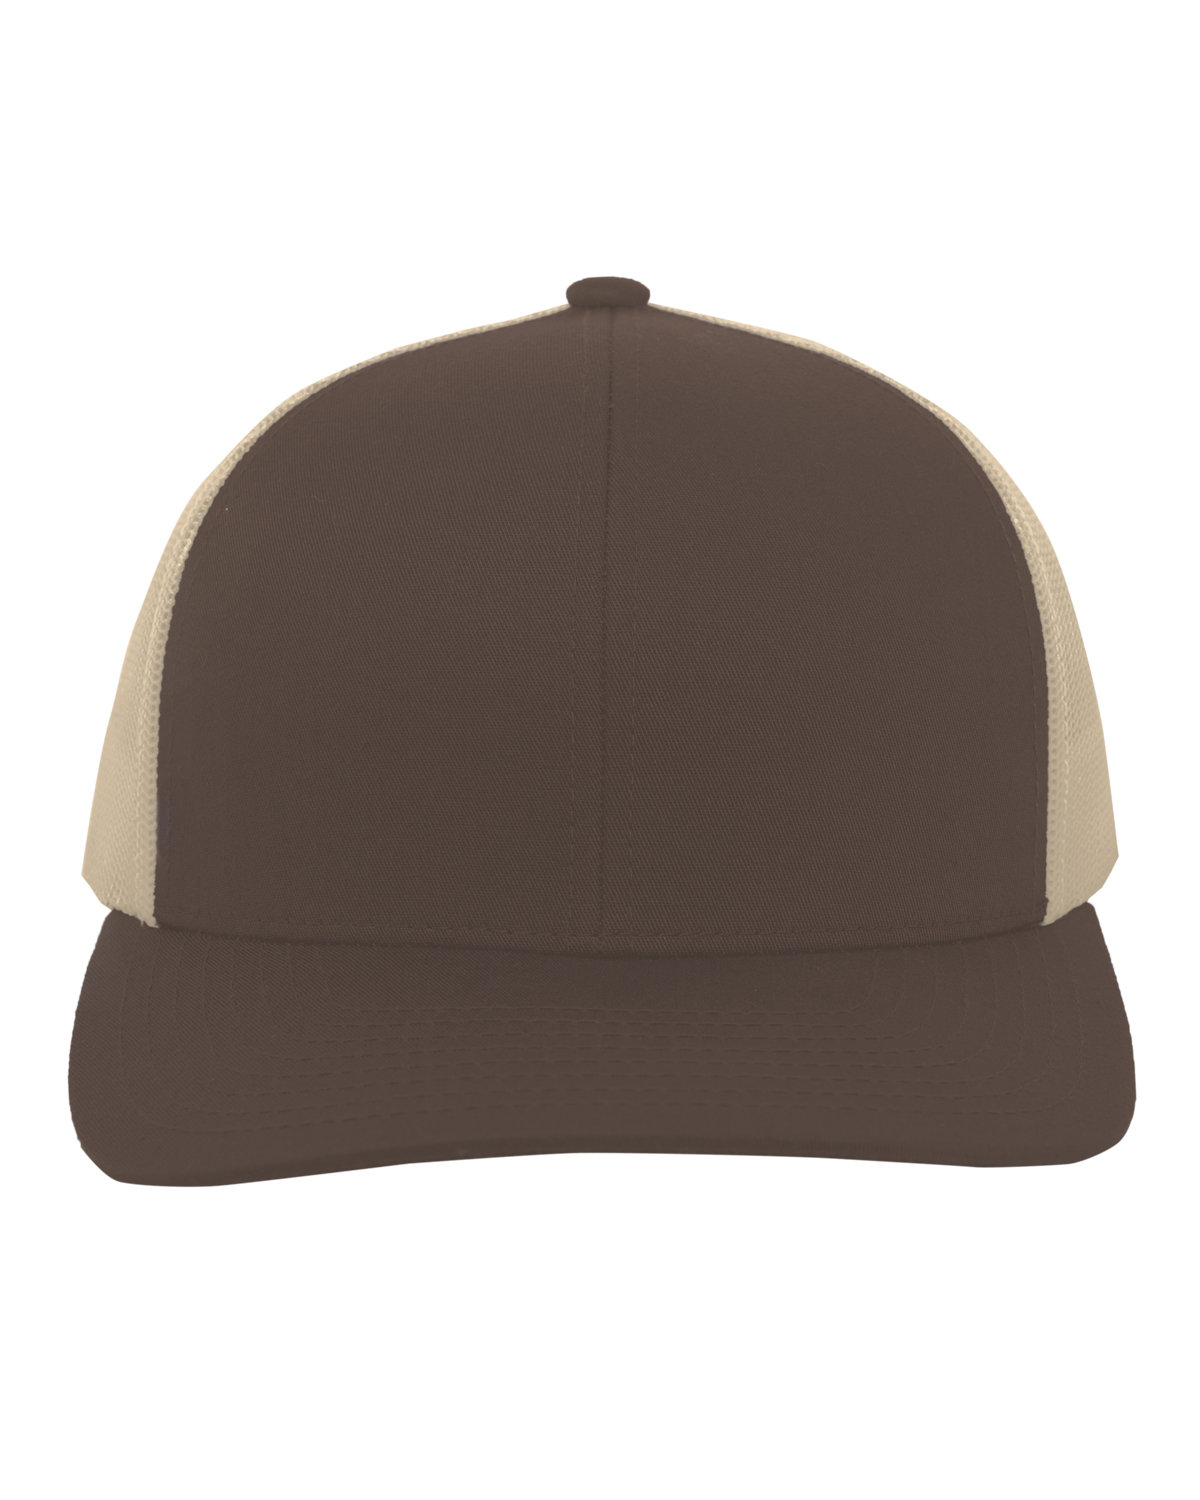 Pacific Headwear Trucker Snapback Hat BROWN/ KHAKI 